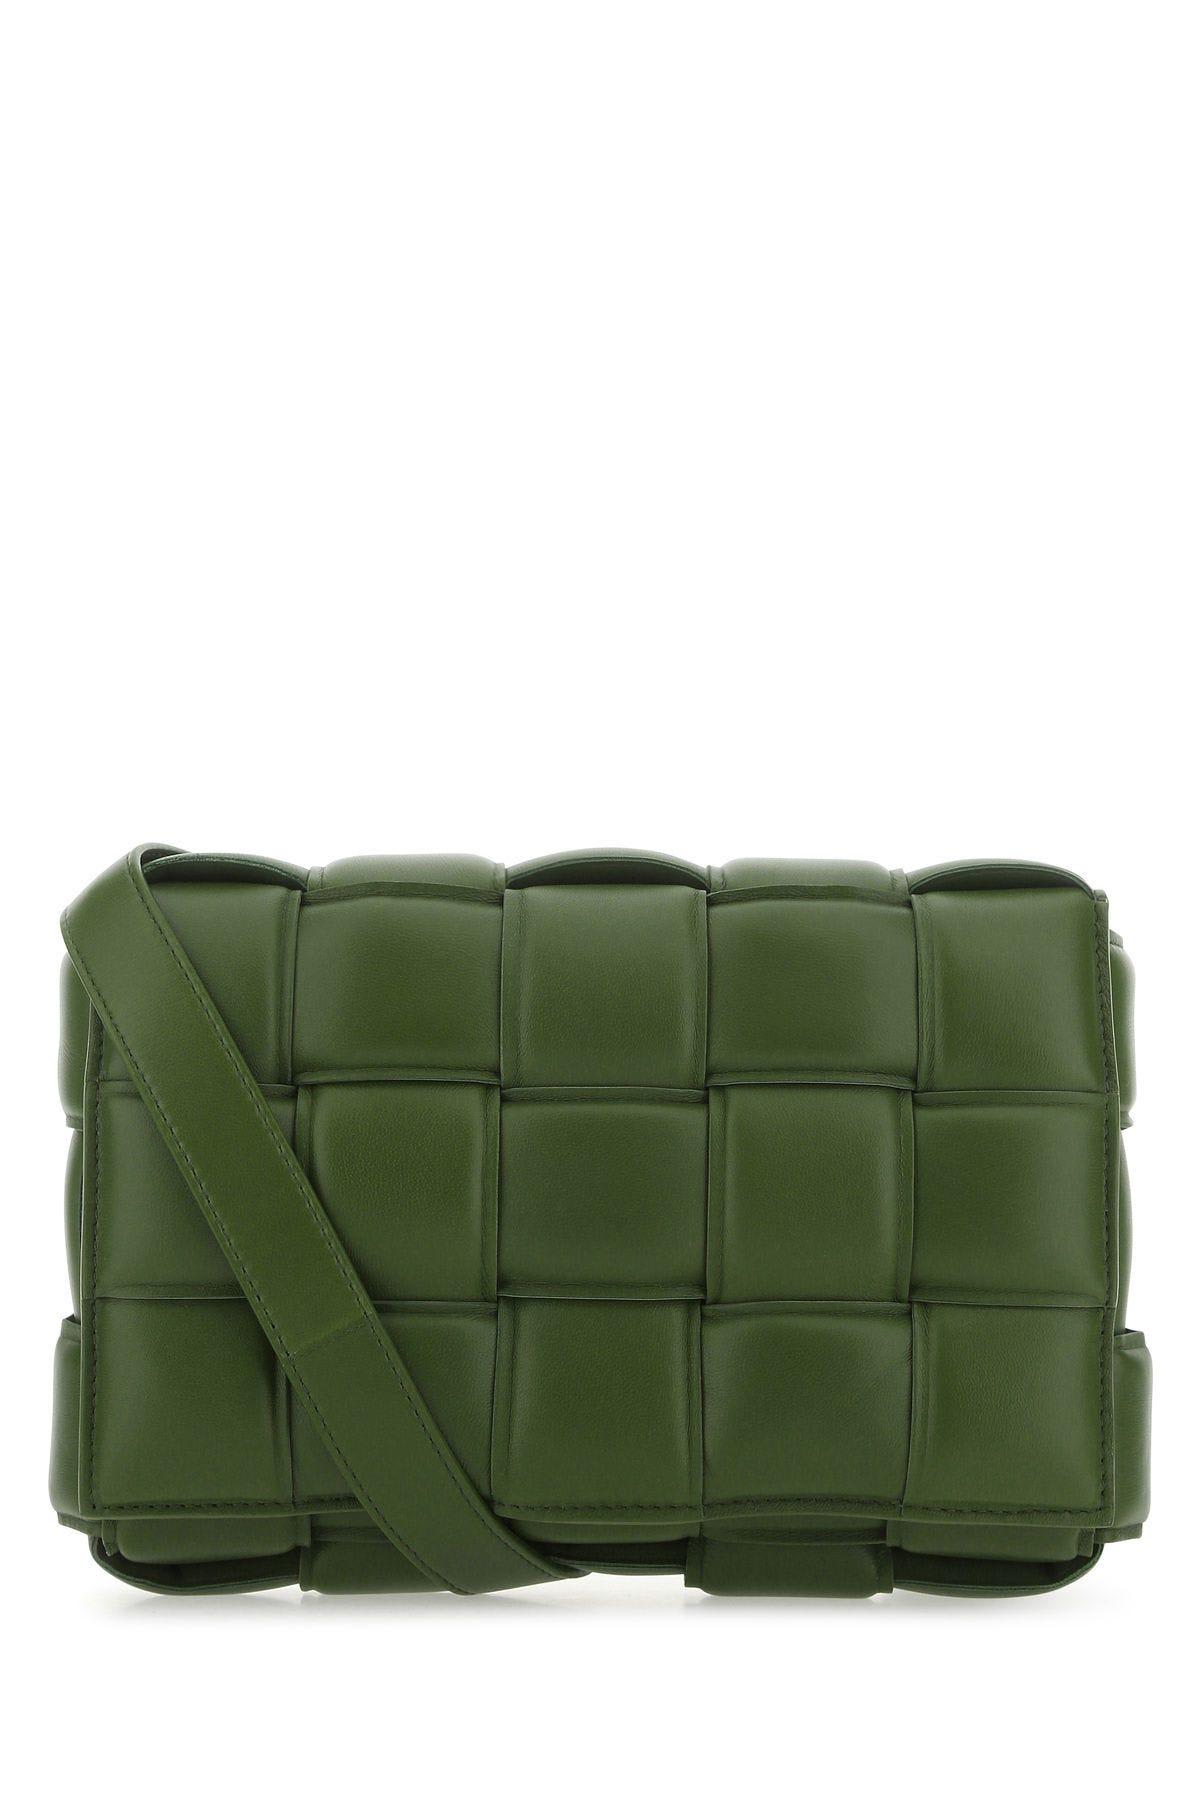 Bottega Veneta Military Green Nappa Leather Small Padded Cassette Crossbody Bag